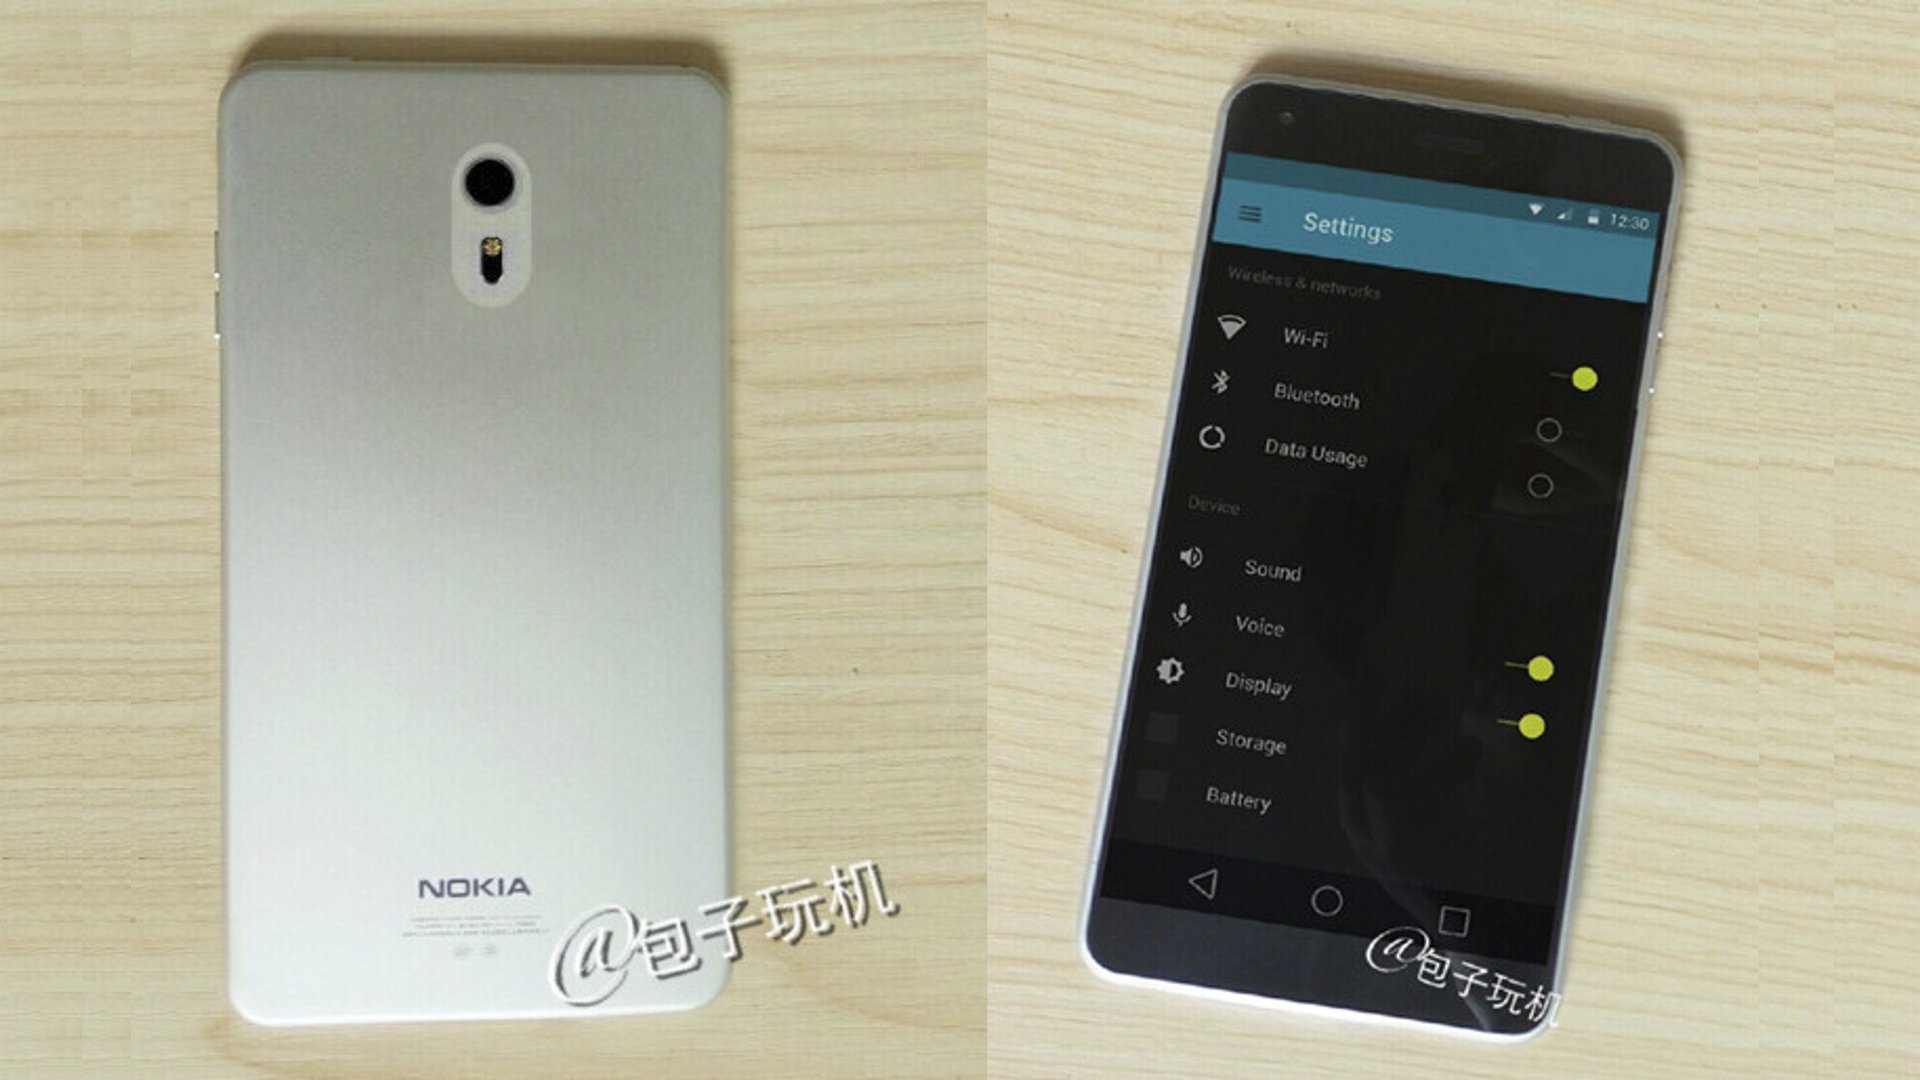 Nokia C1 - Concept